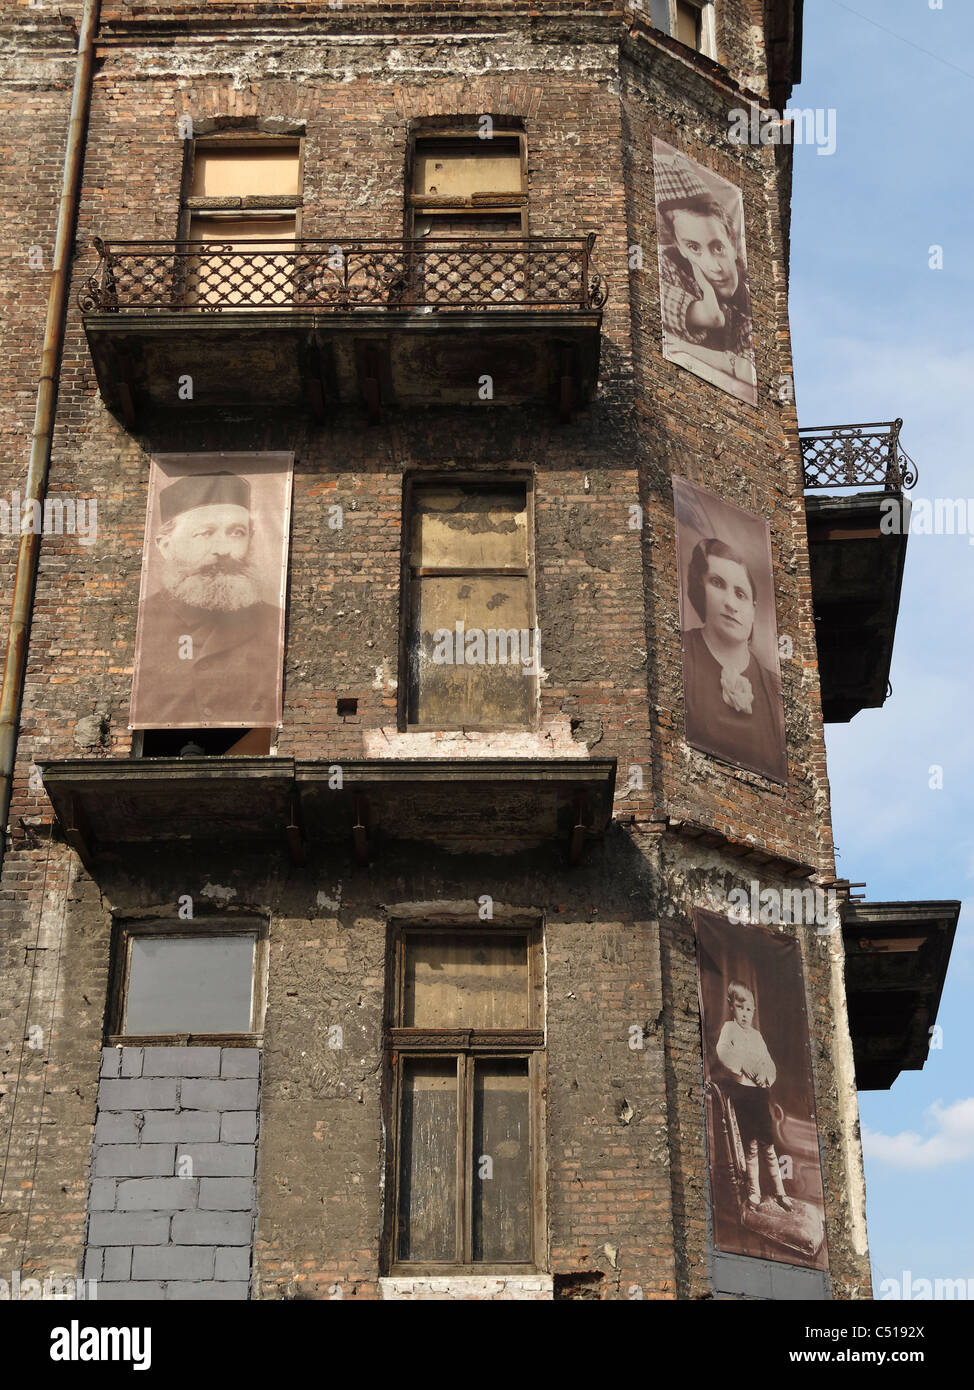 Fotos von Insassen des jüdischen Ghettos in Warschau, Polen, an den Wänden des restlichen Gebäudes in Ul Próżna. Stockfoto